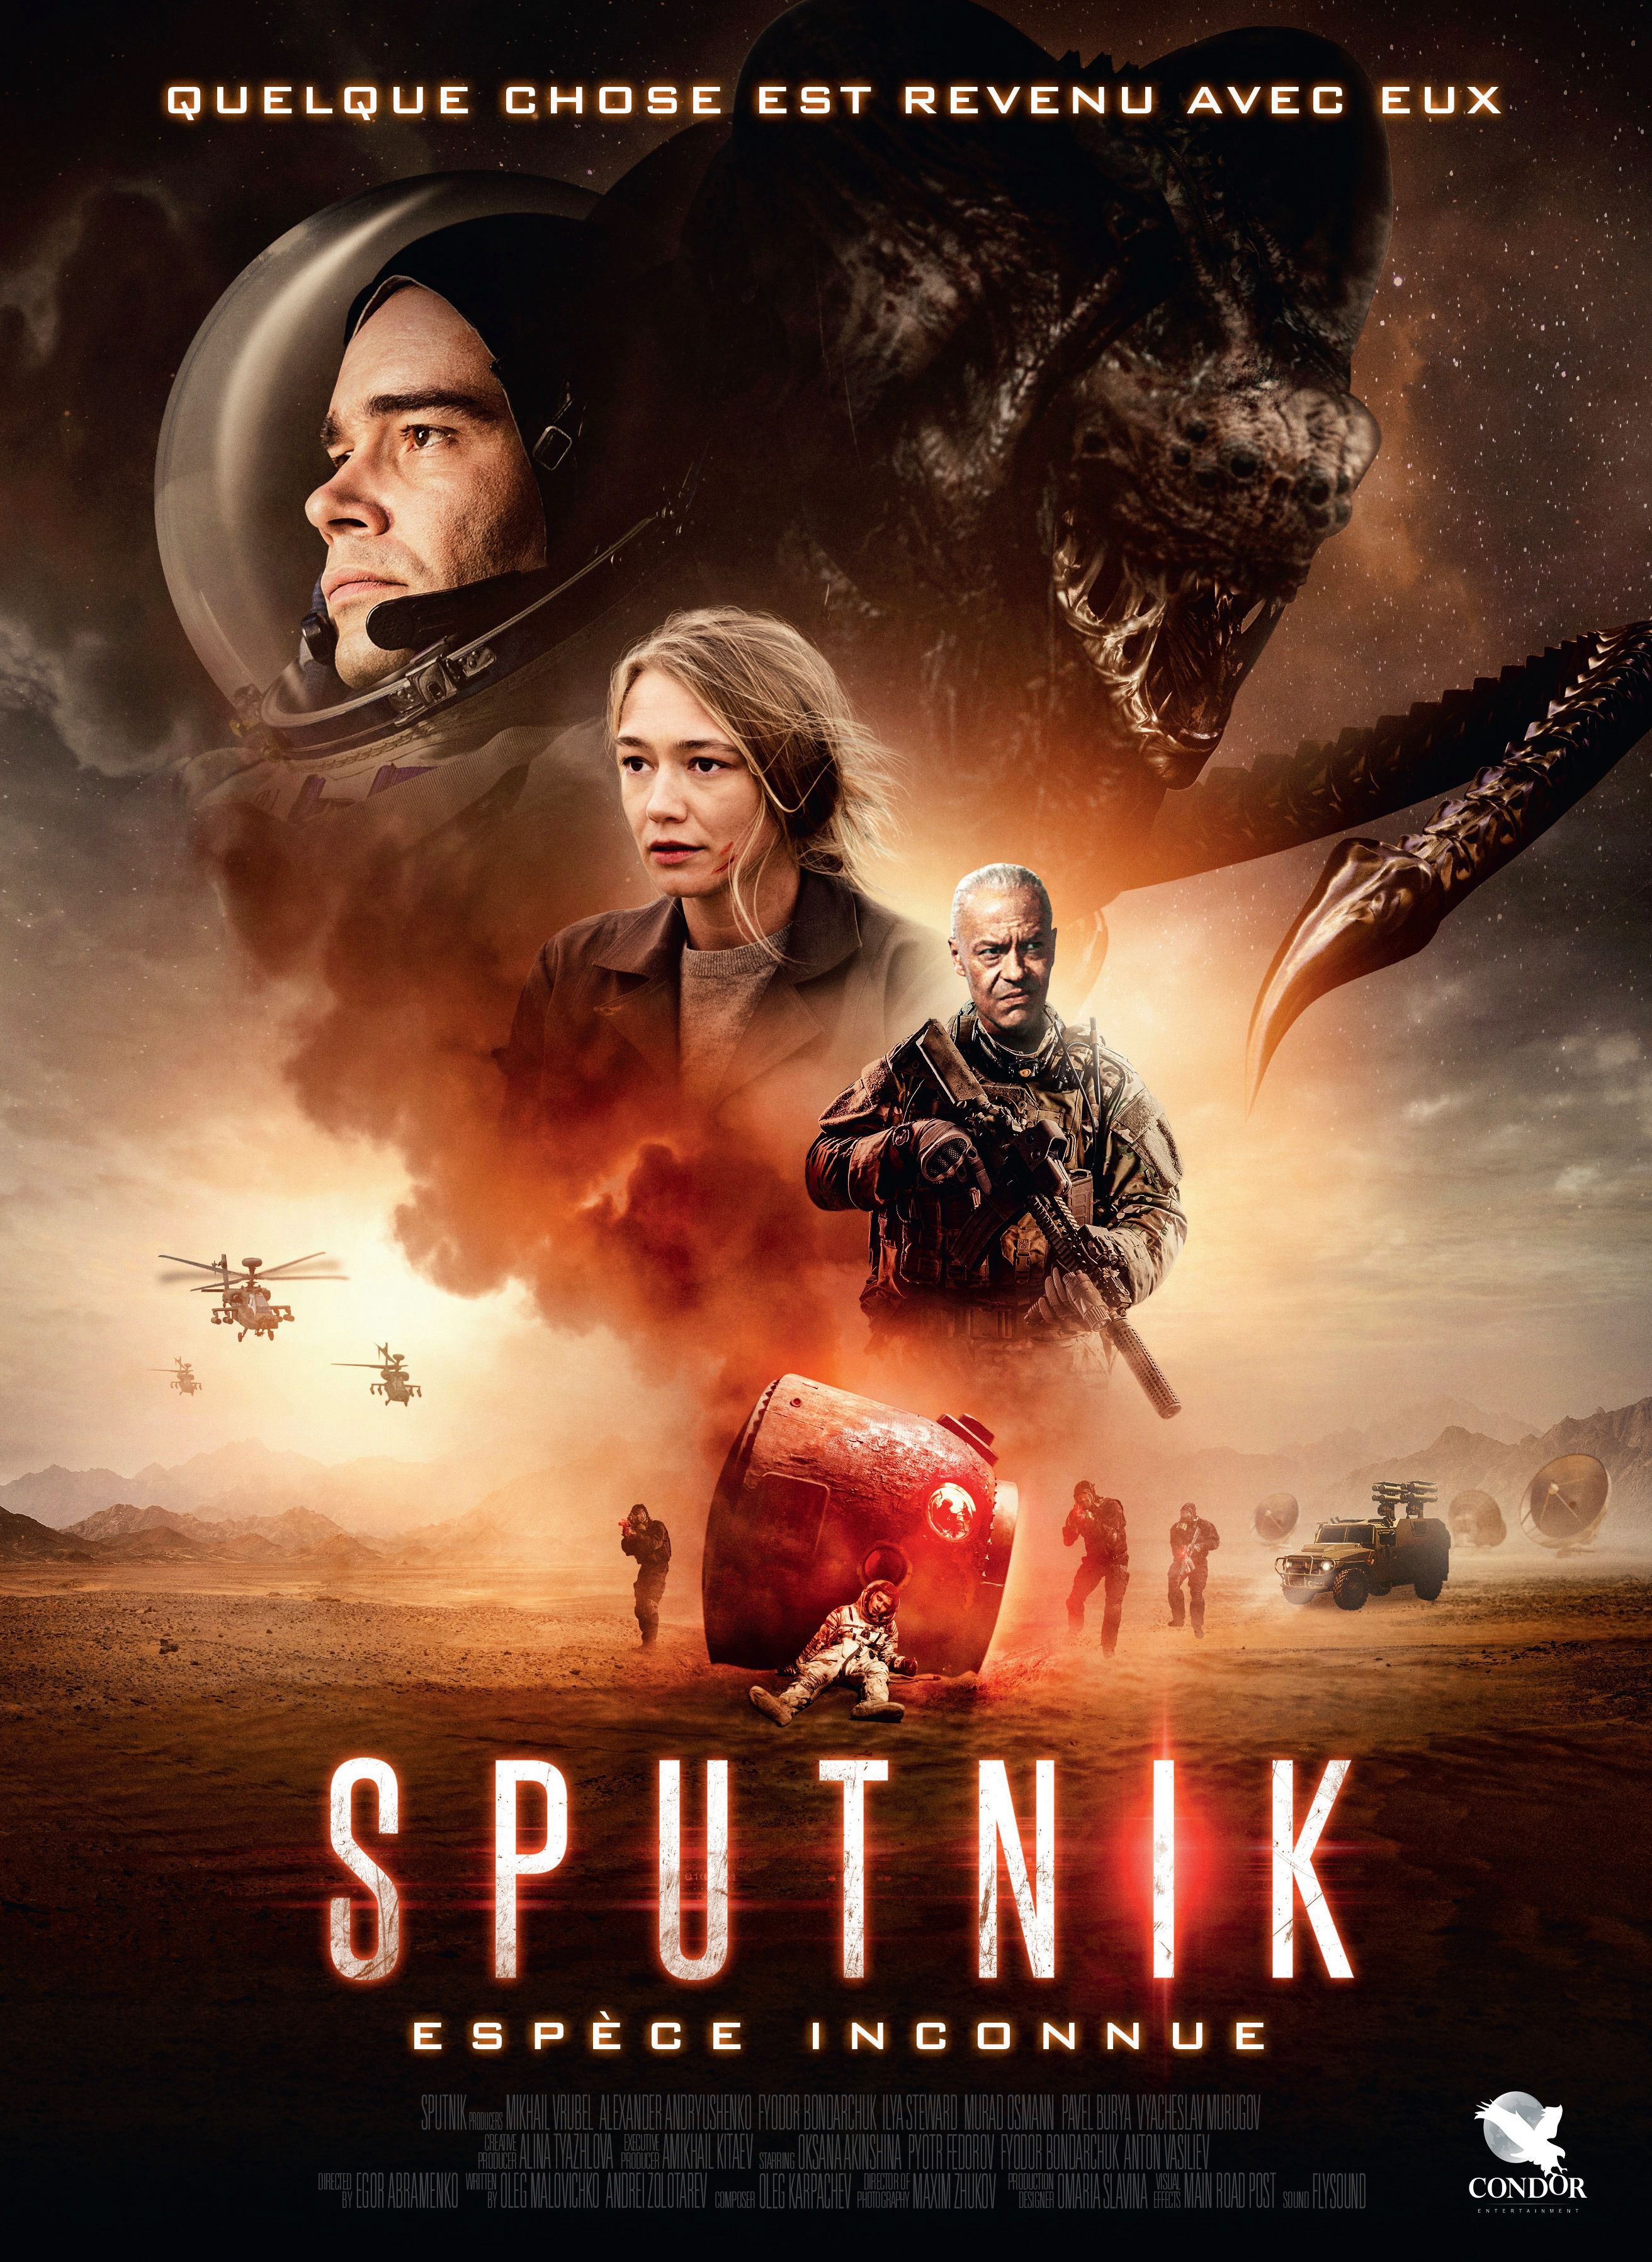 Sputnik, espèce inconnue - Film (2021) streaming VF gratuit complet